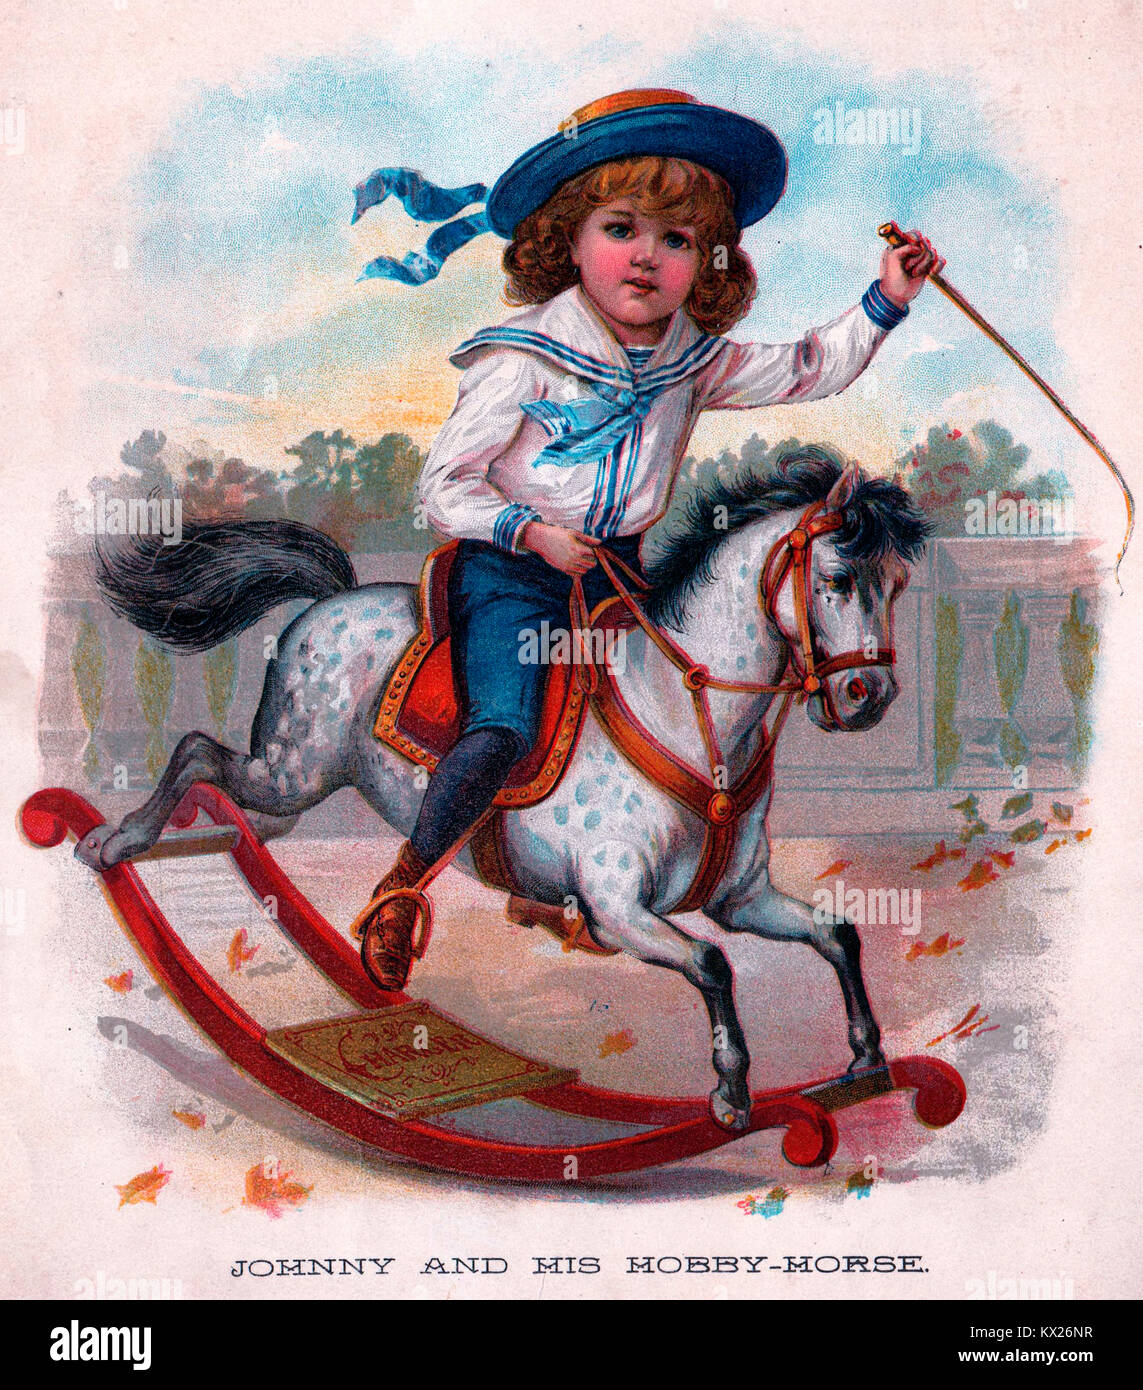 Johnnie To et son hobby horse - droit de l'ère victorienne de little boy riding a hobby horse Banque D'Images